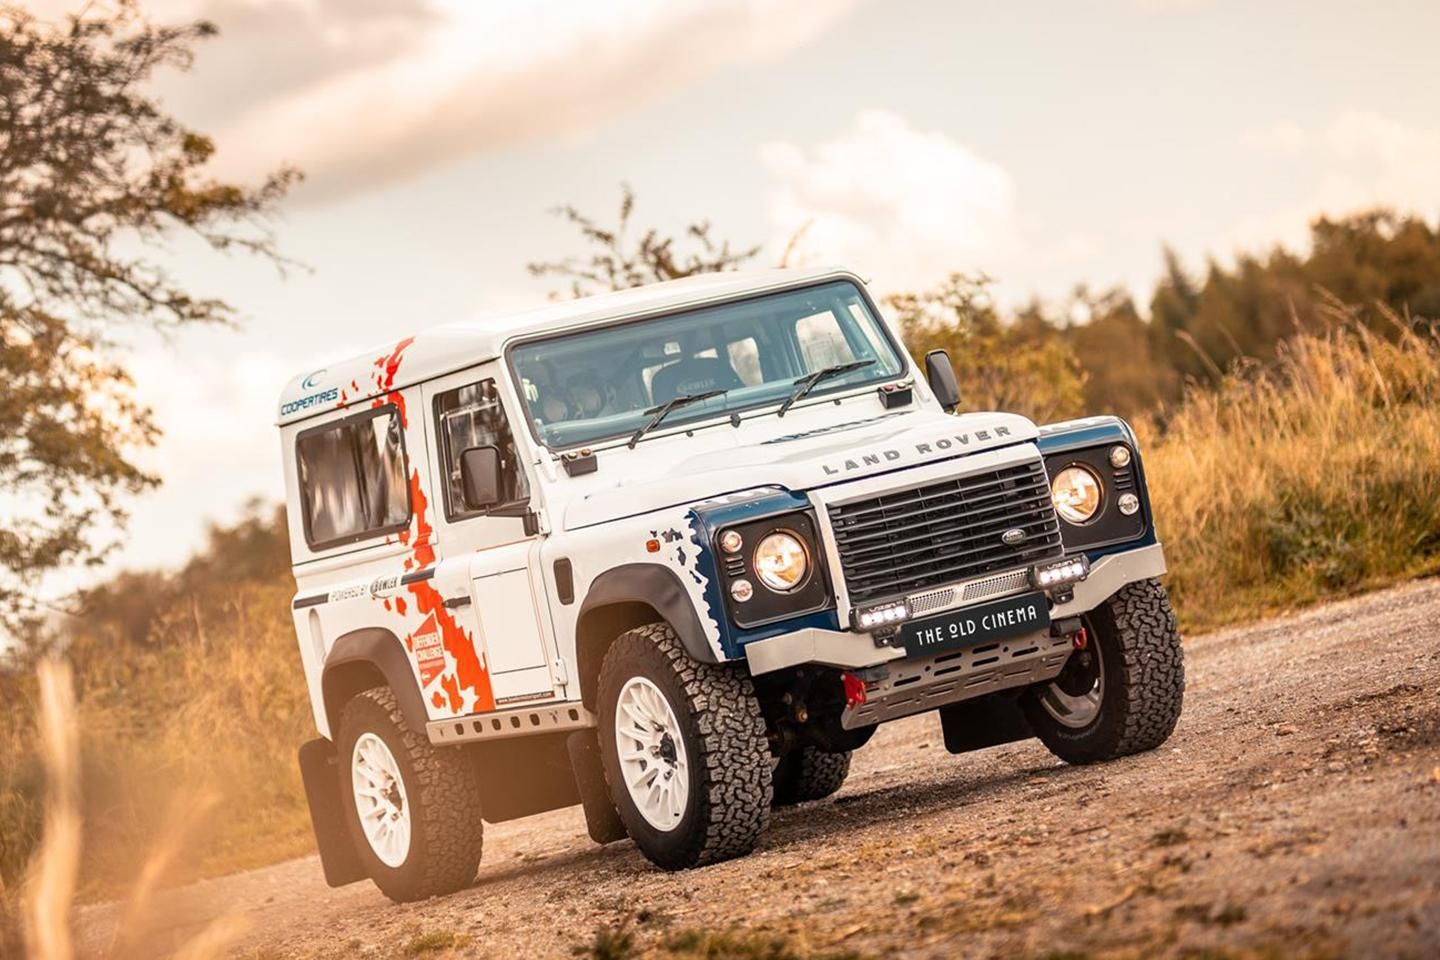 Theseus Verwacht het toonhoogte Bowler Challenge Land Rover Defender for sale | PistonHeads UK